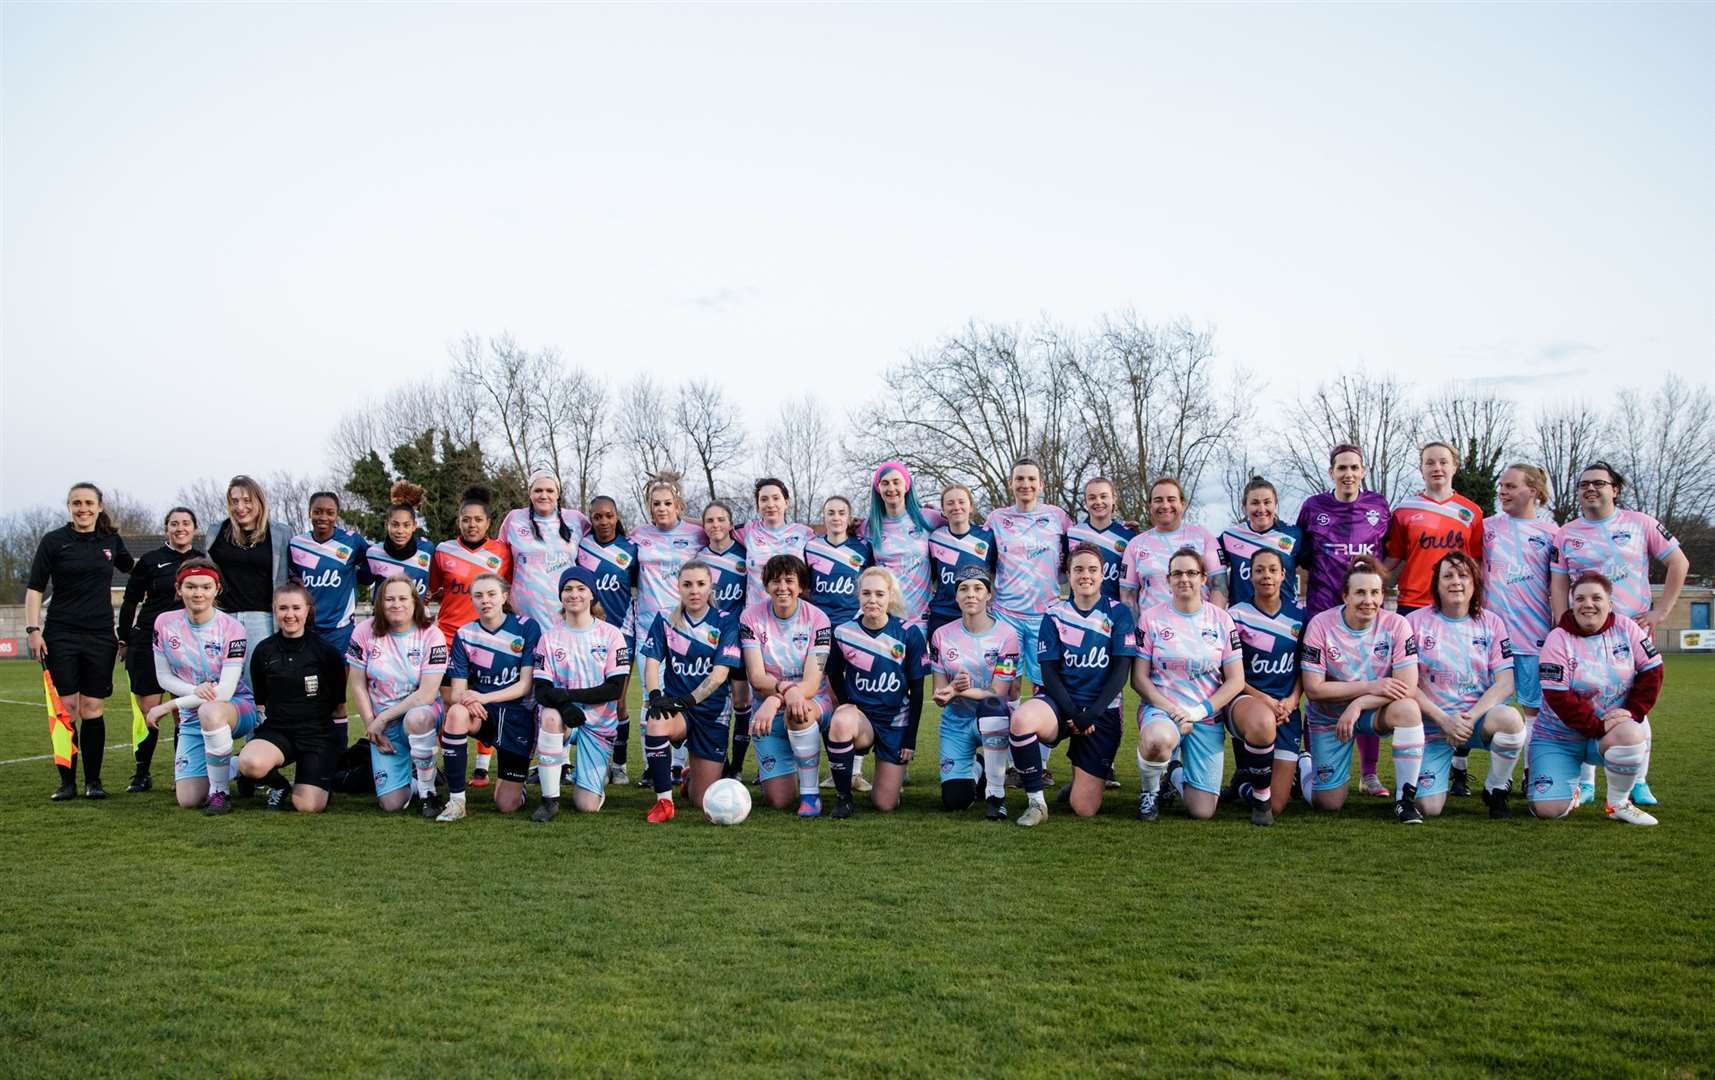 Dulwich Hamlet Ladies contre TRUK United FC a été le premier match connu mettant en scène une équipe entièrement composée de femmes transgenres.  Photo: Liam Asman